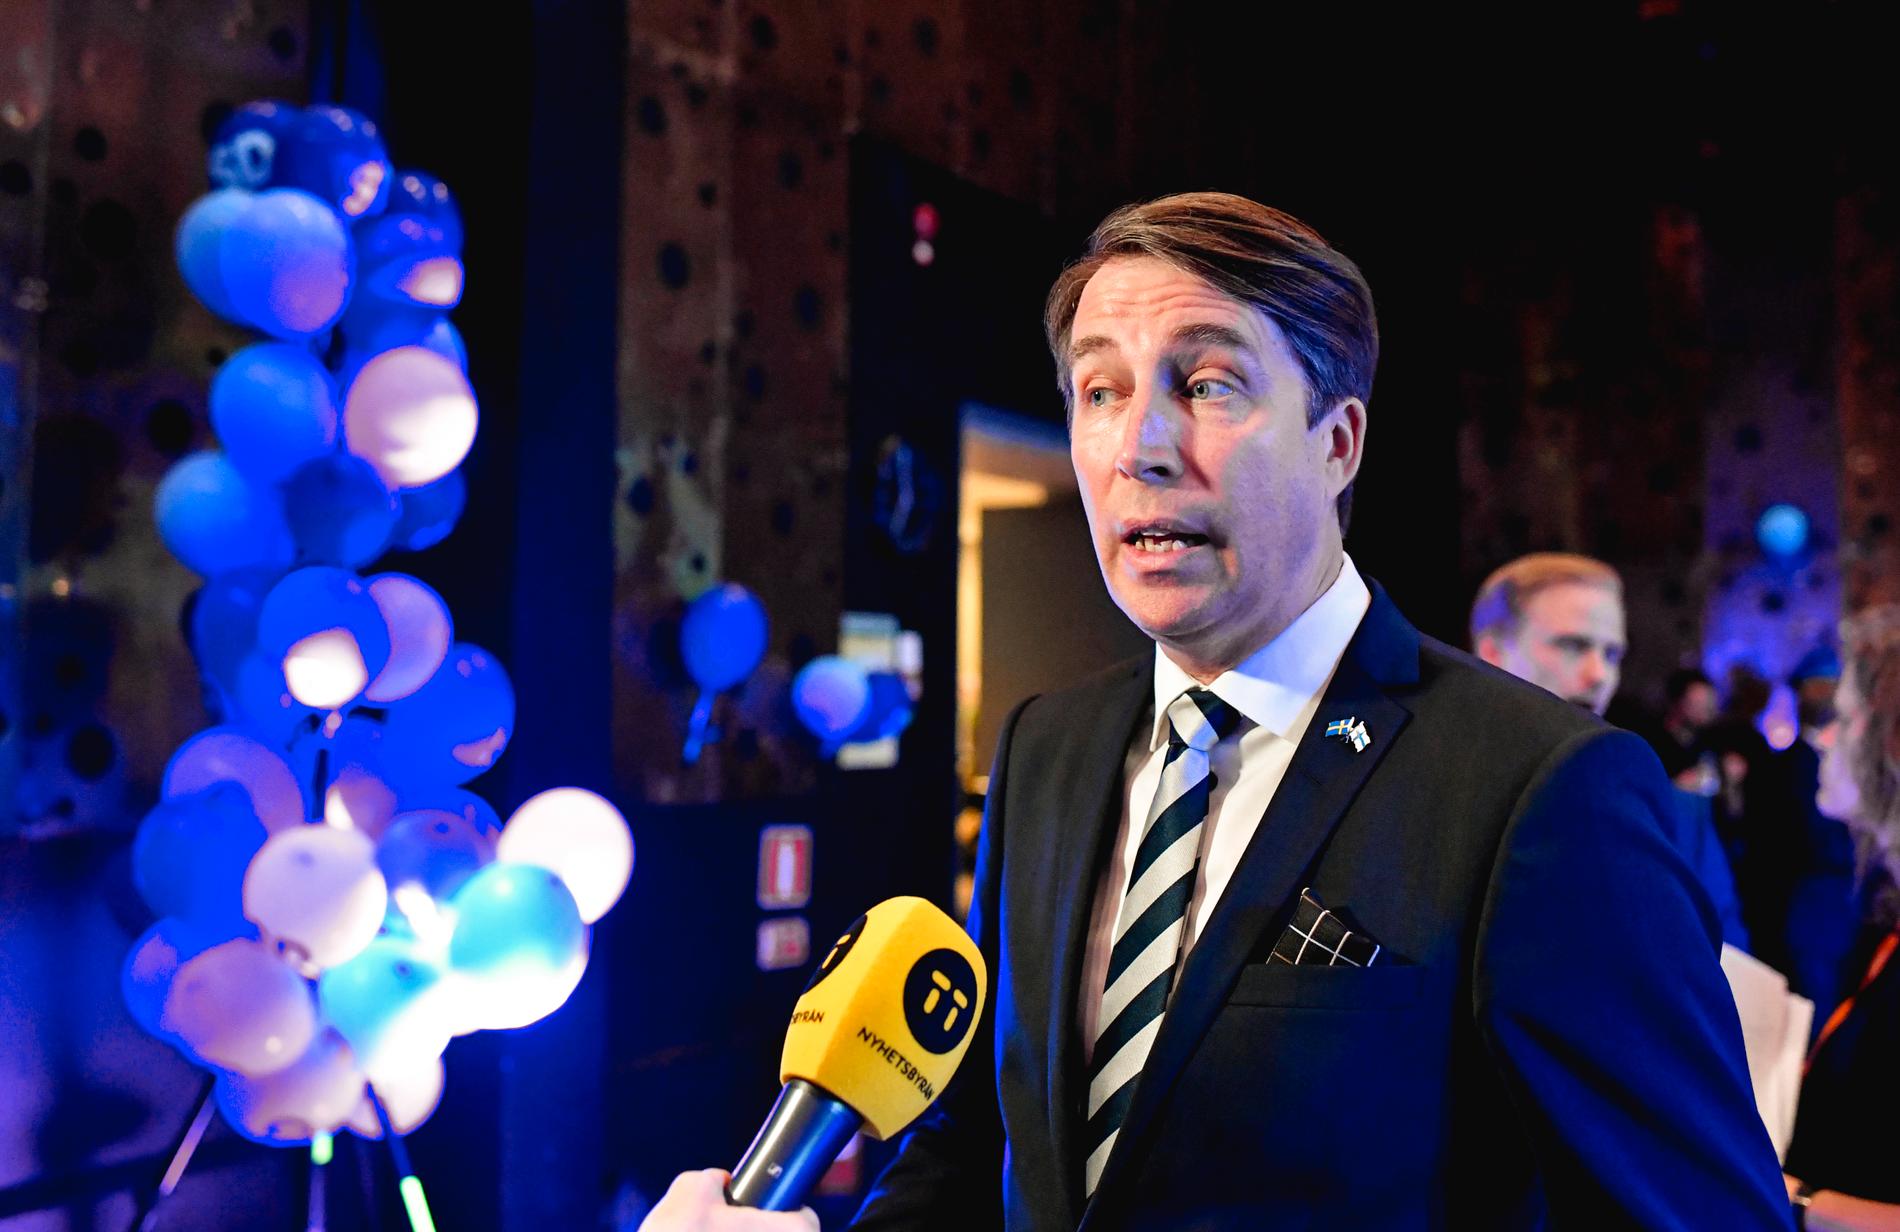 Richard Jomshof efterträdde Björn Söder som partisekreterare i Sverigedemokraterna. Arkivbild.